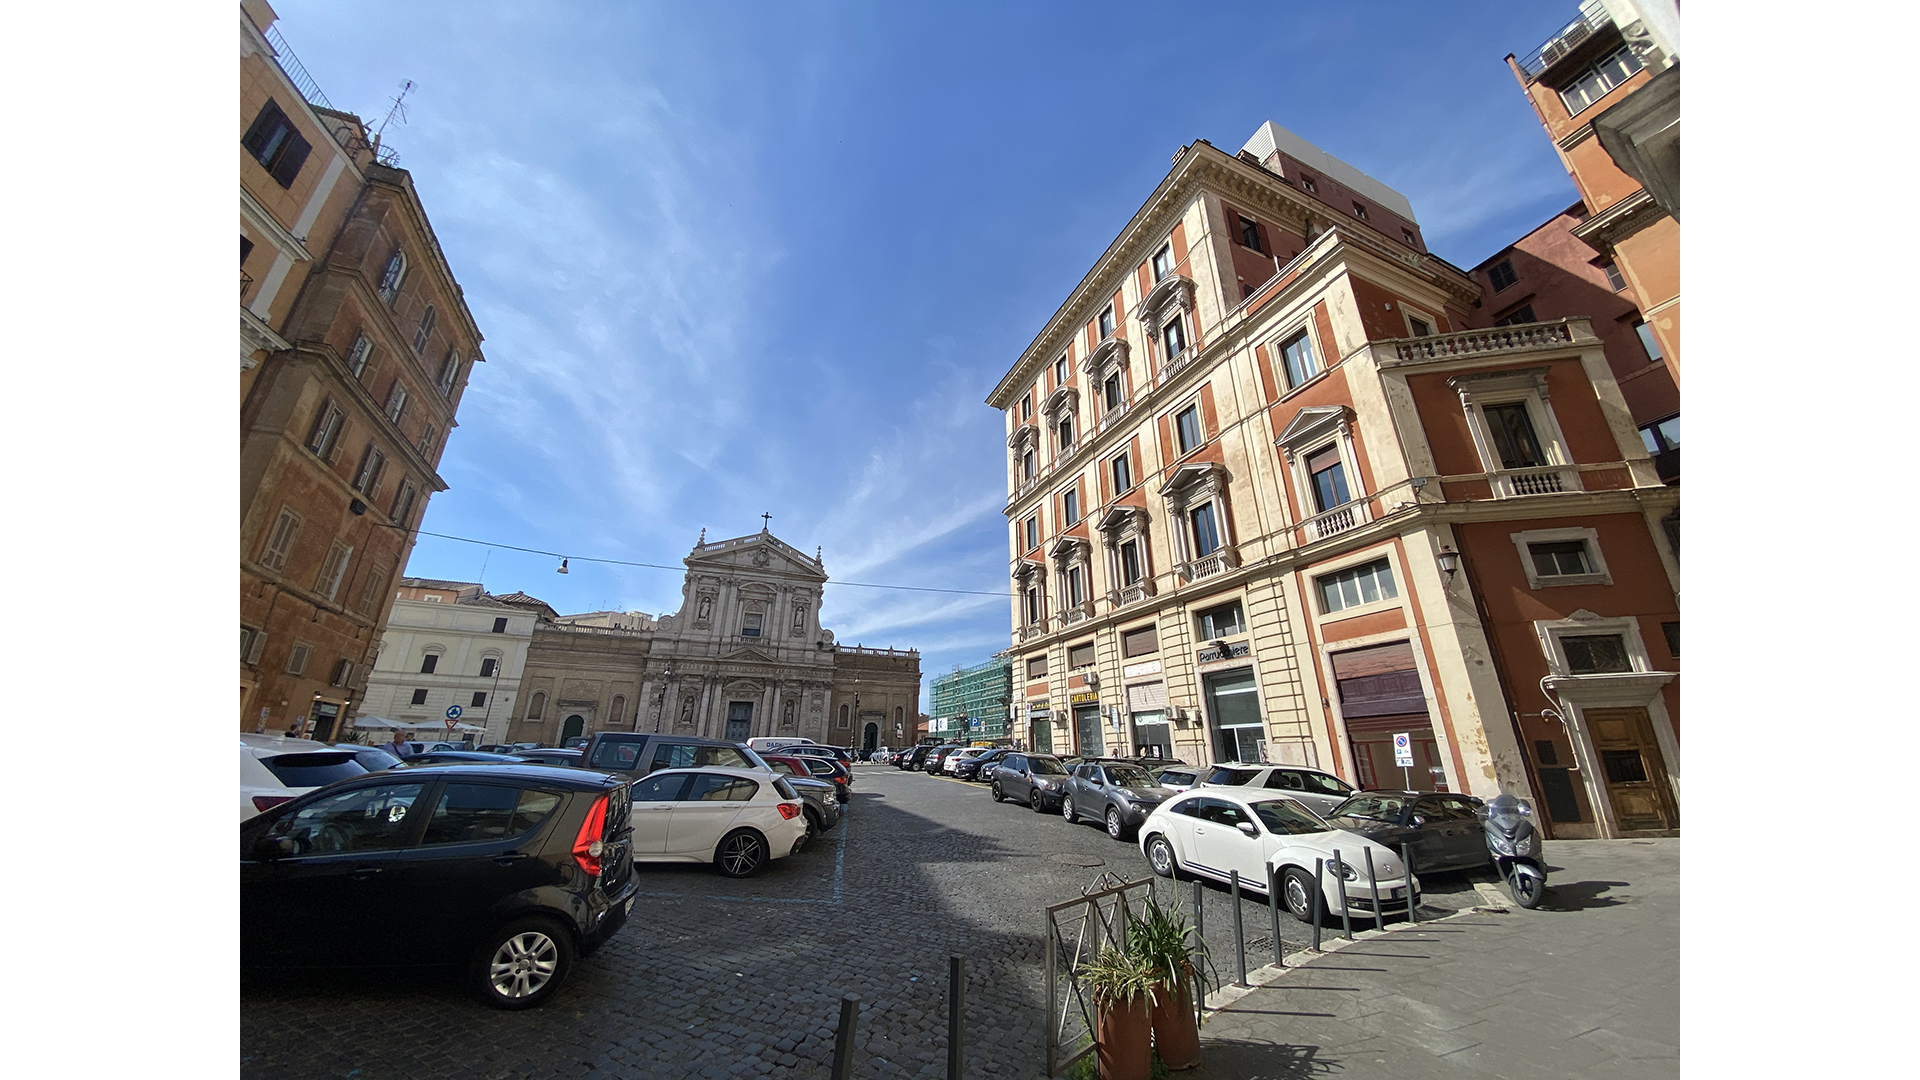 Negozio Roma_Piazza-San-Bernardo